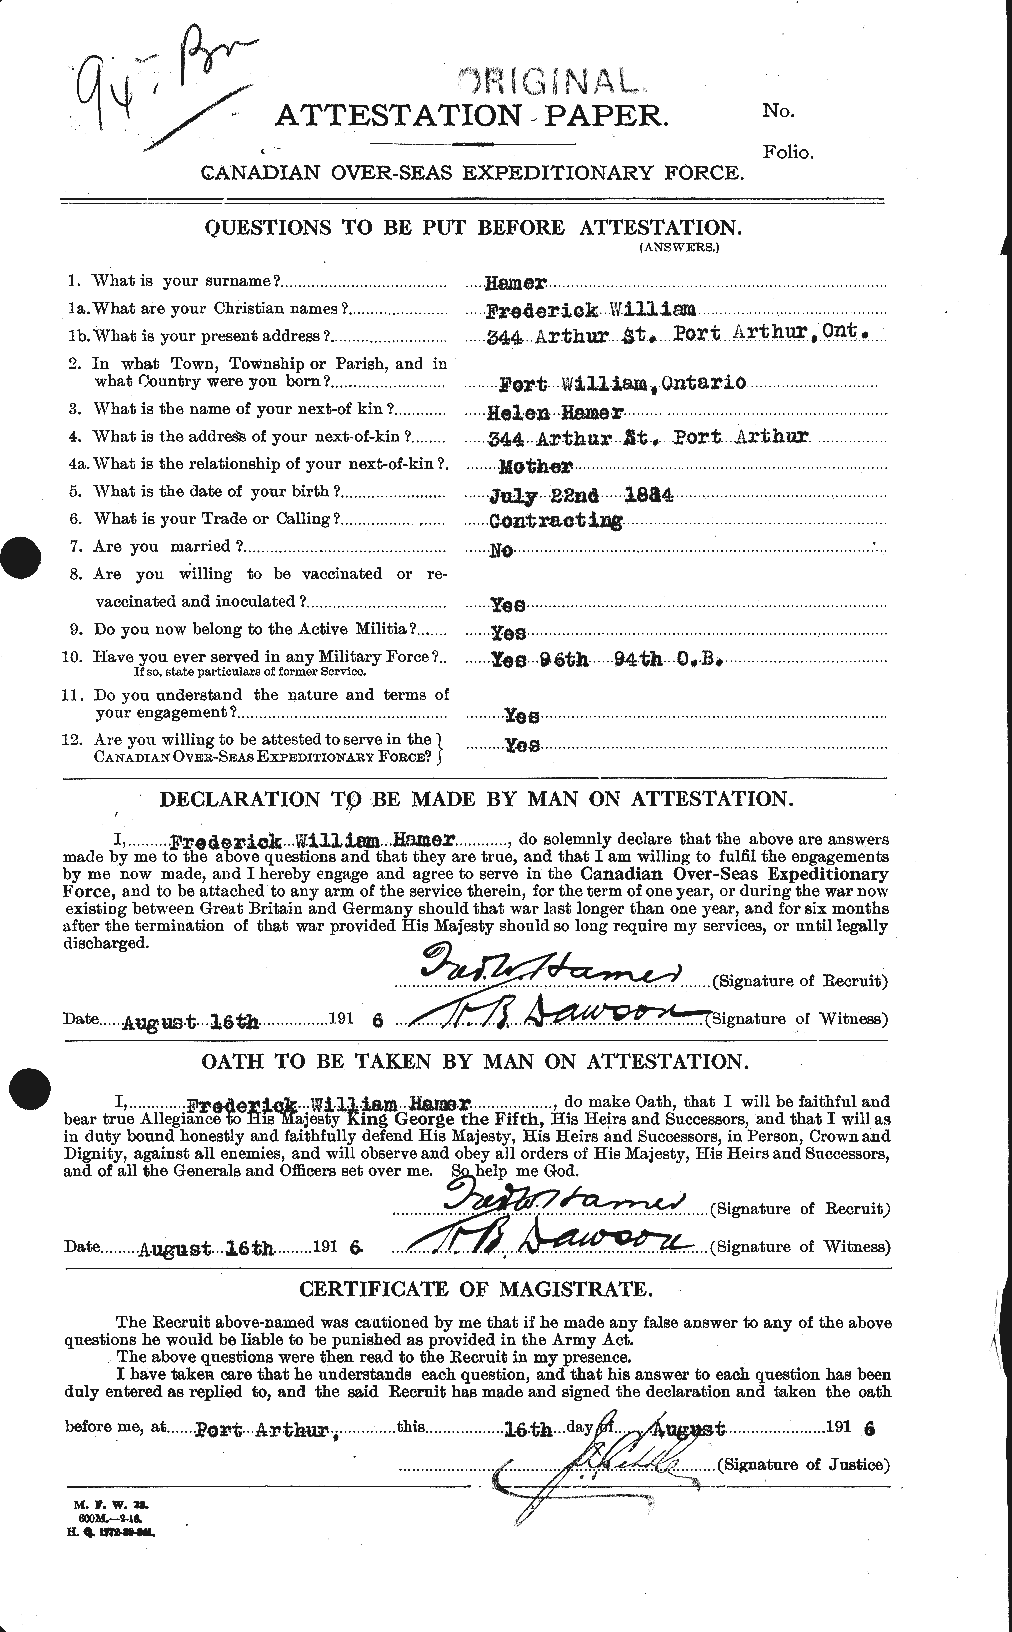 Dossiers du Personnel de la Première Guerre mondiale - CEC 375078a